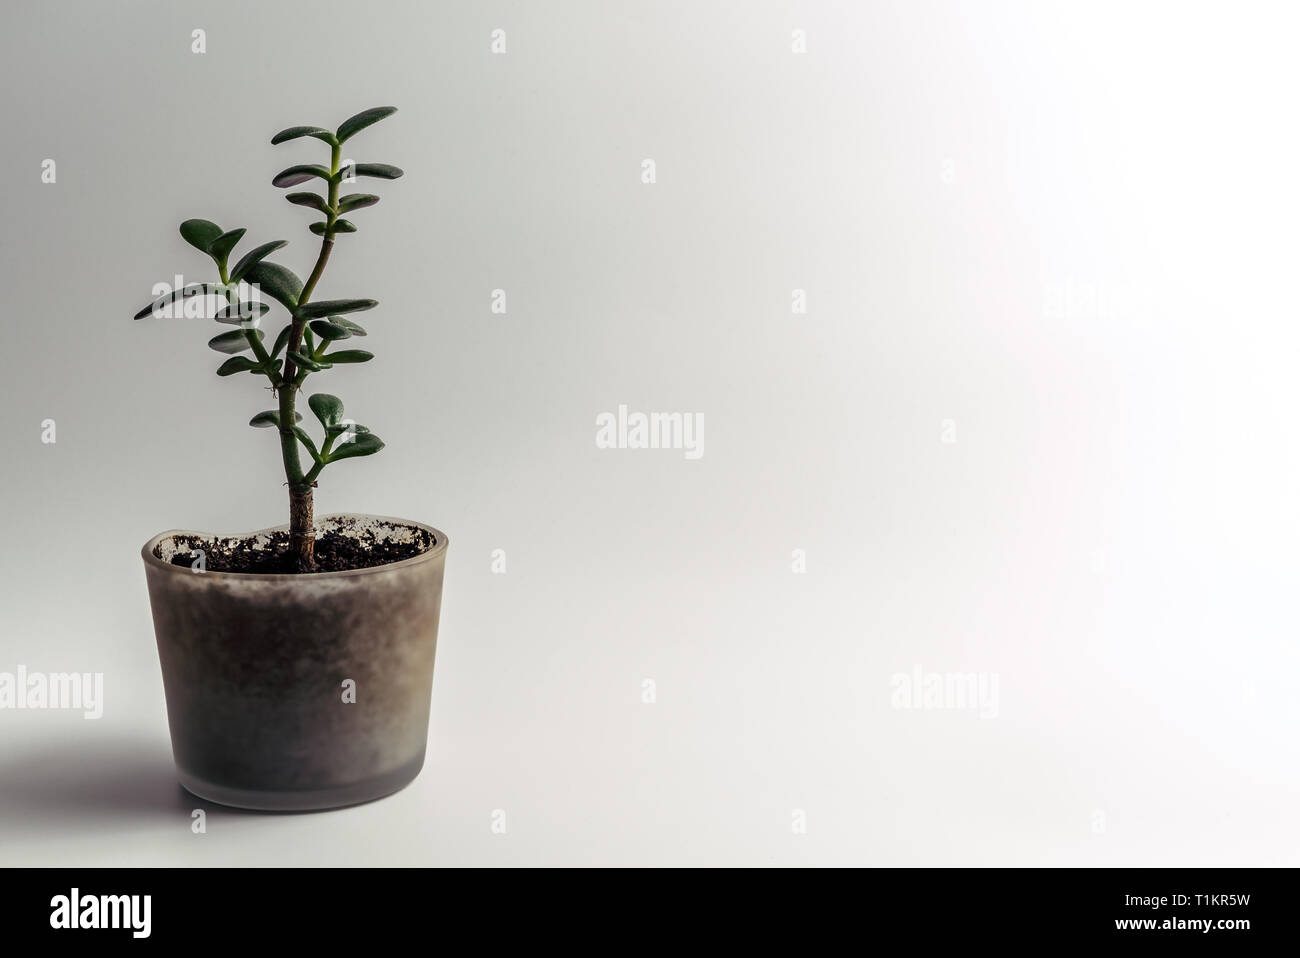 Grüne Jade Pflanze, crassula ovata Zimmerpflanze, Feng Shui Money Tree sukkulenten Topfpflanzen in einem modernen Glas Blumentopf mit organischen Bodens isoliert auf weißem Stockfoto